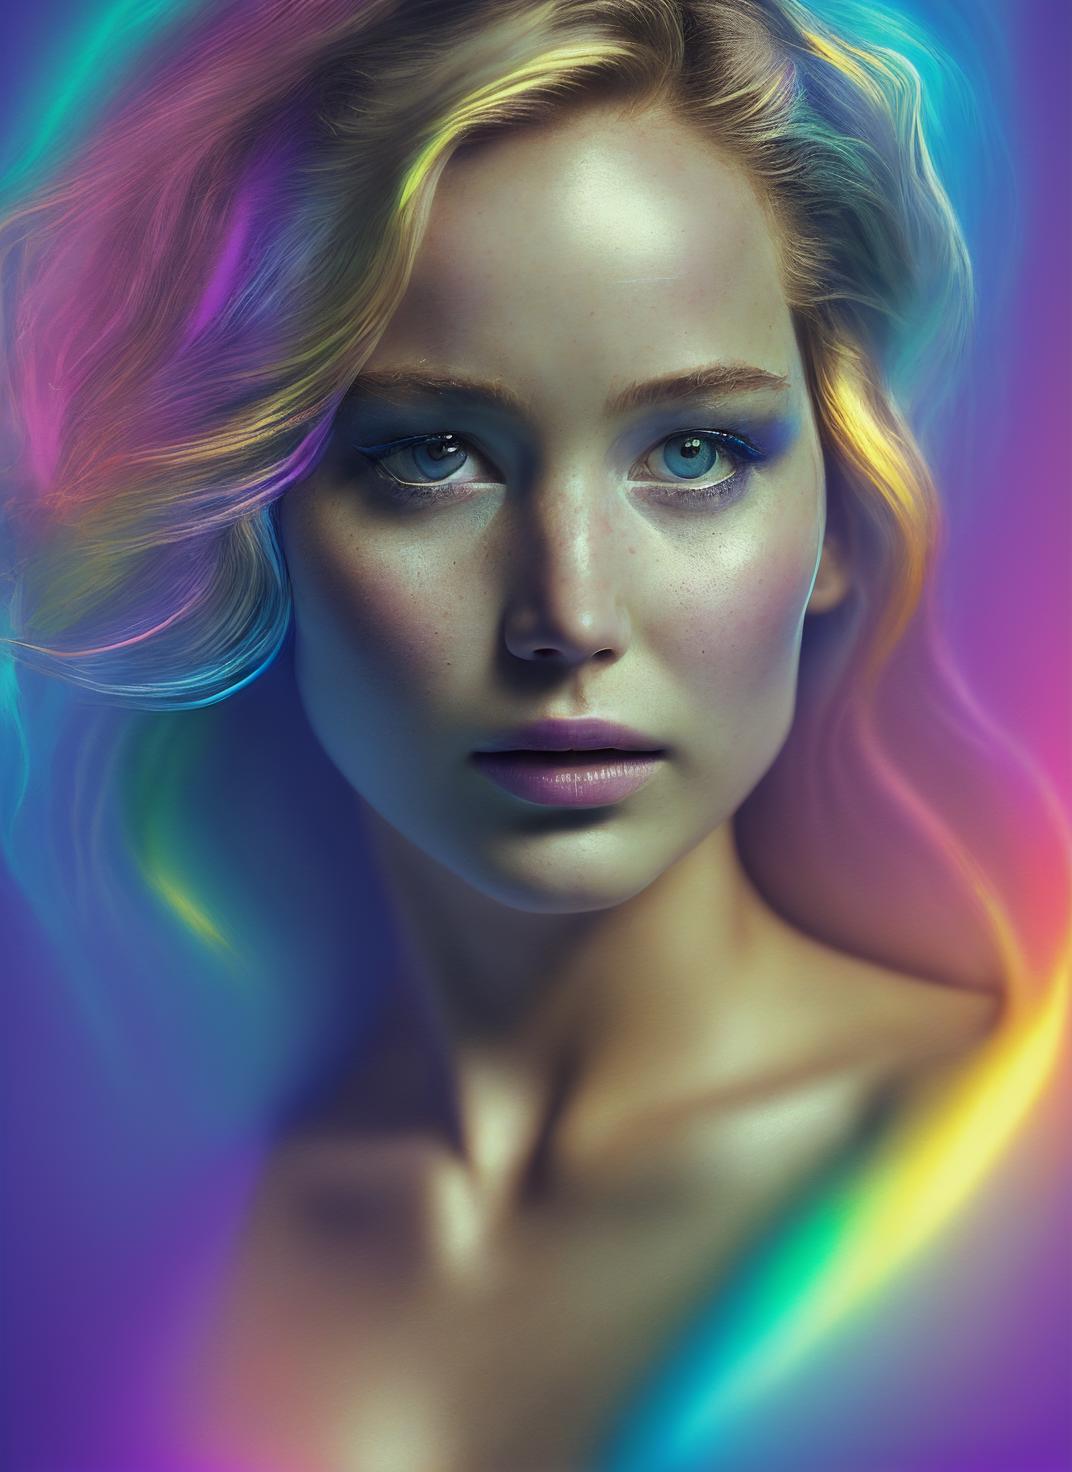 Jennifer Lawrence image by malcolmrey